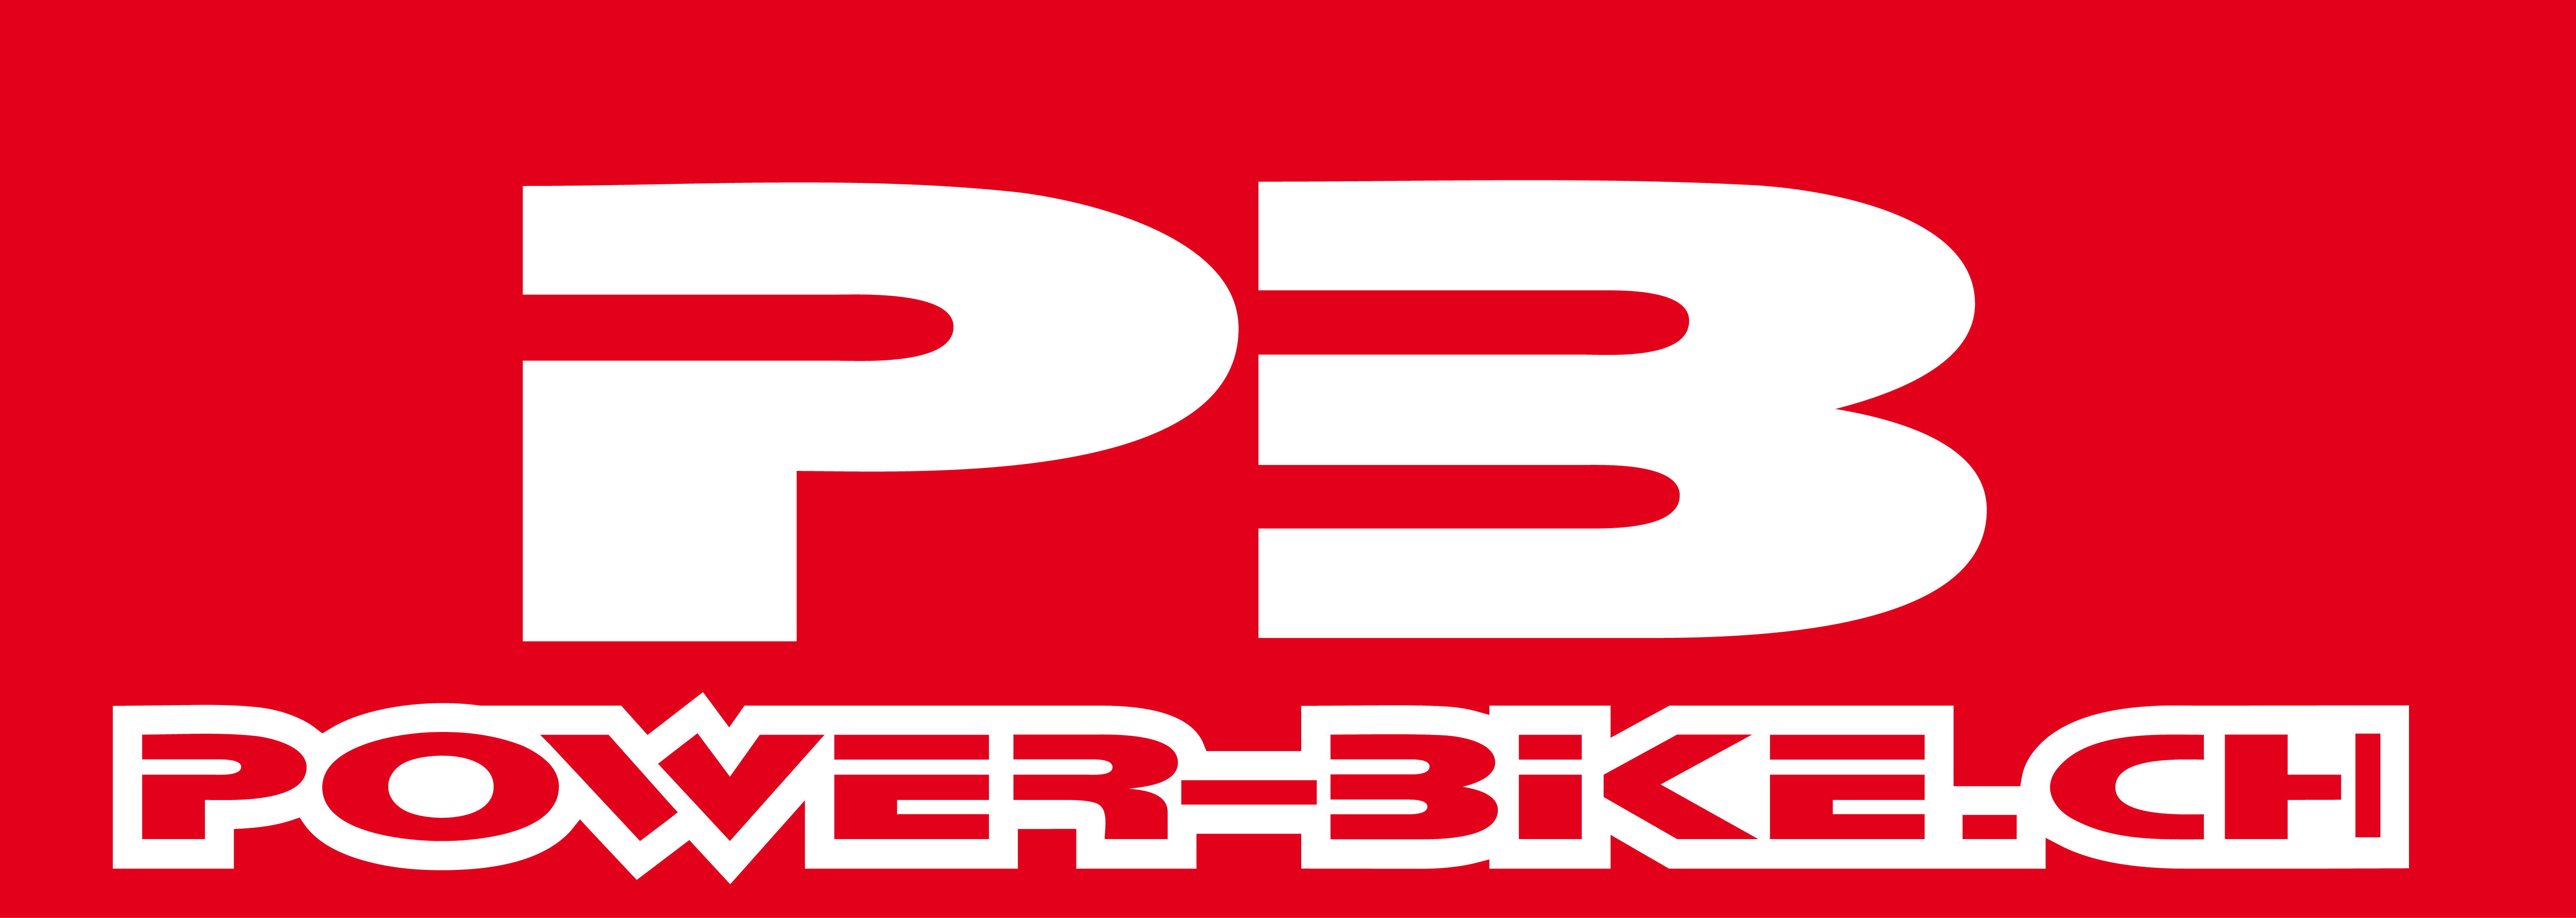 Power-Bike.ch